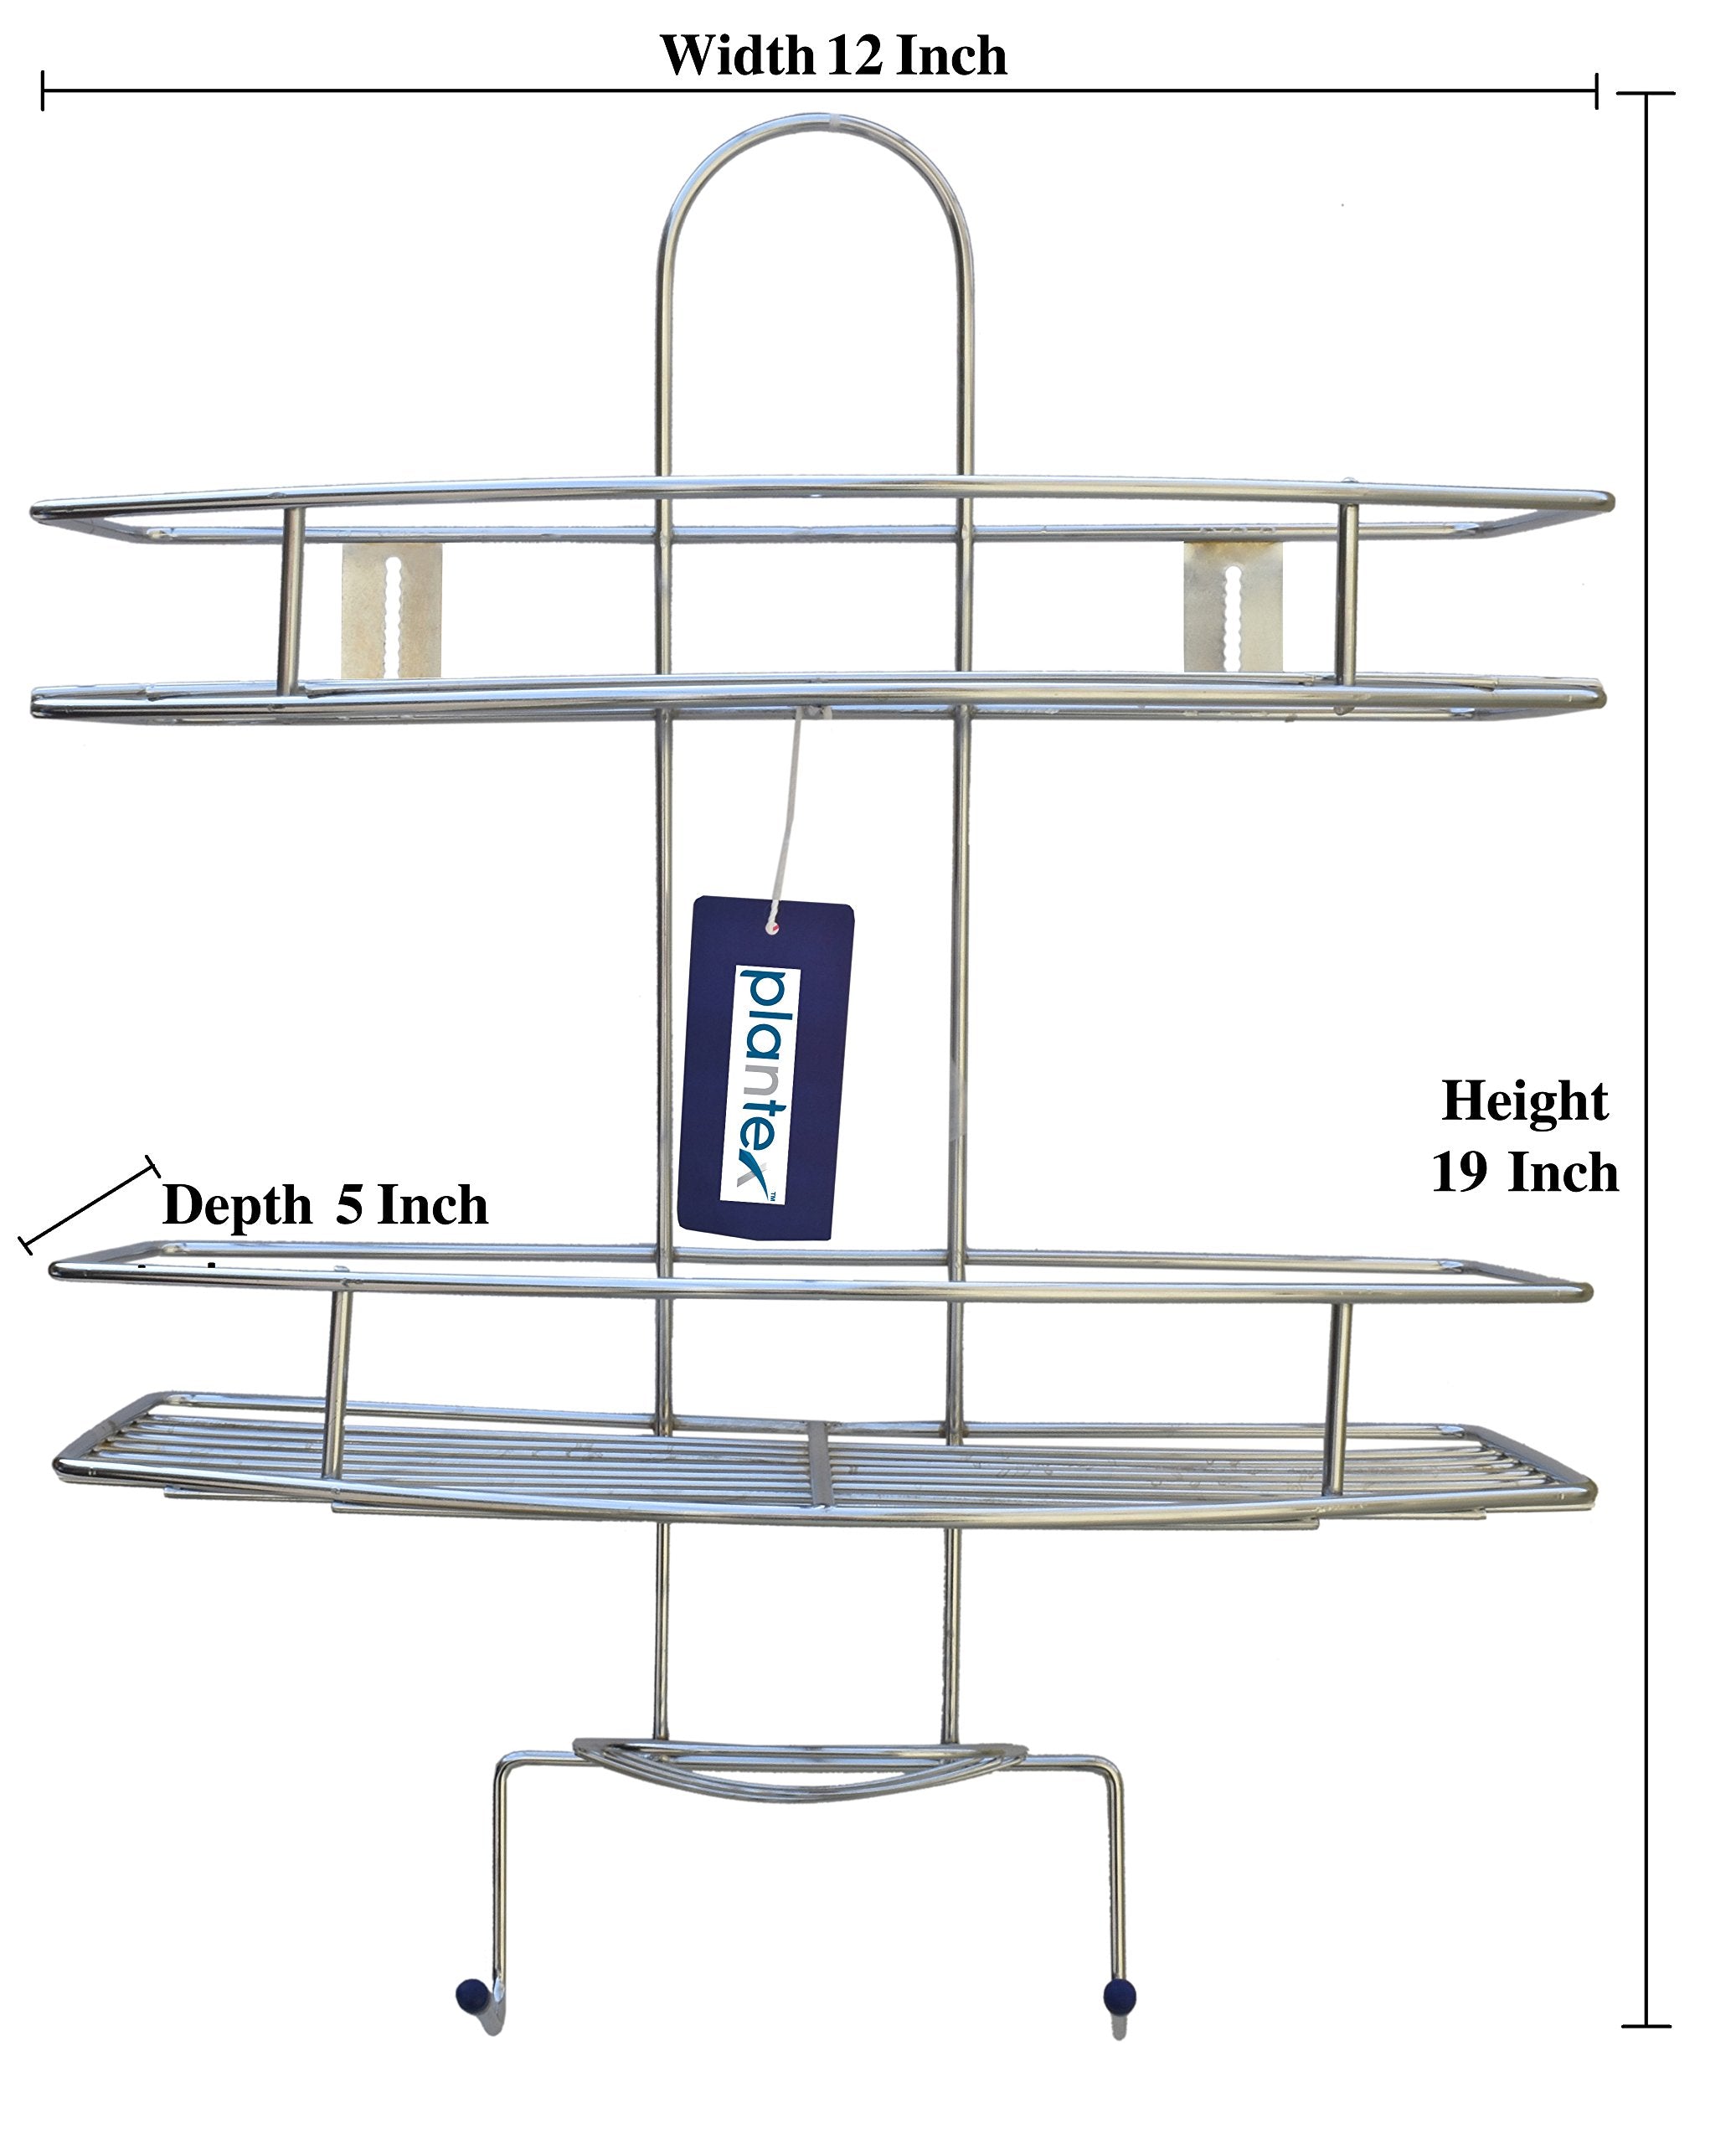 Plantex 5 in 1 Stainless Steel Multipurpose Shelf/Holder for Kitchen & Bathroom-Regular(Pack of 1)